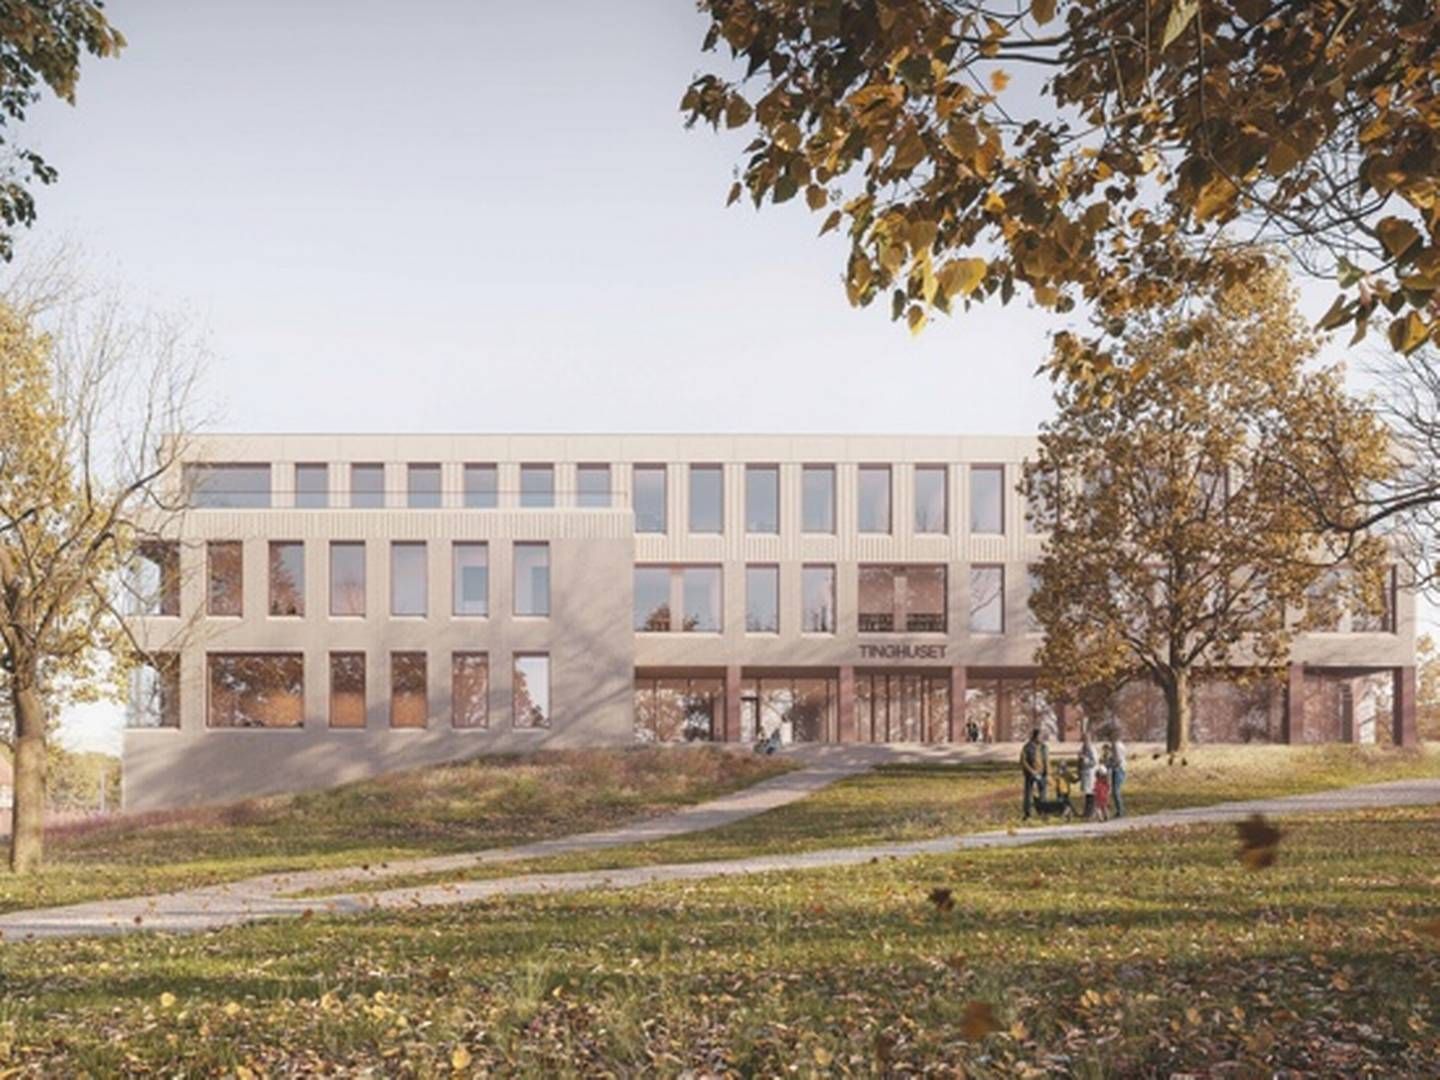 NYTT TINGHUS: Slik blir det nye tinghuset i Tønsberg seende ut, når det er klart. | Foto: Dyrvik Arkitekter